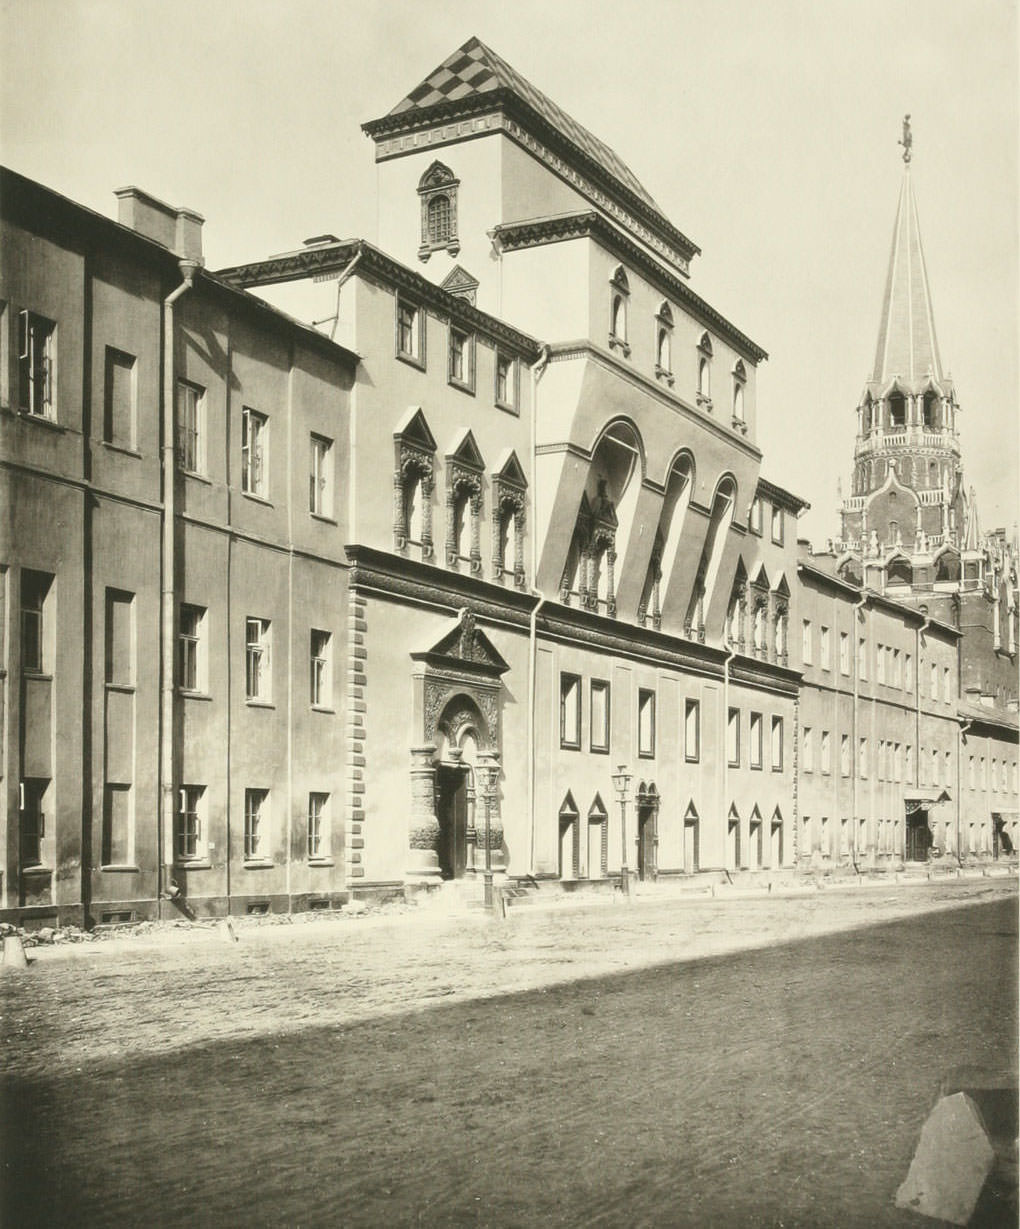 Commanders House in Kremlin, 1880s.